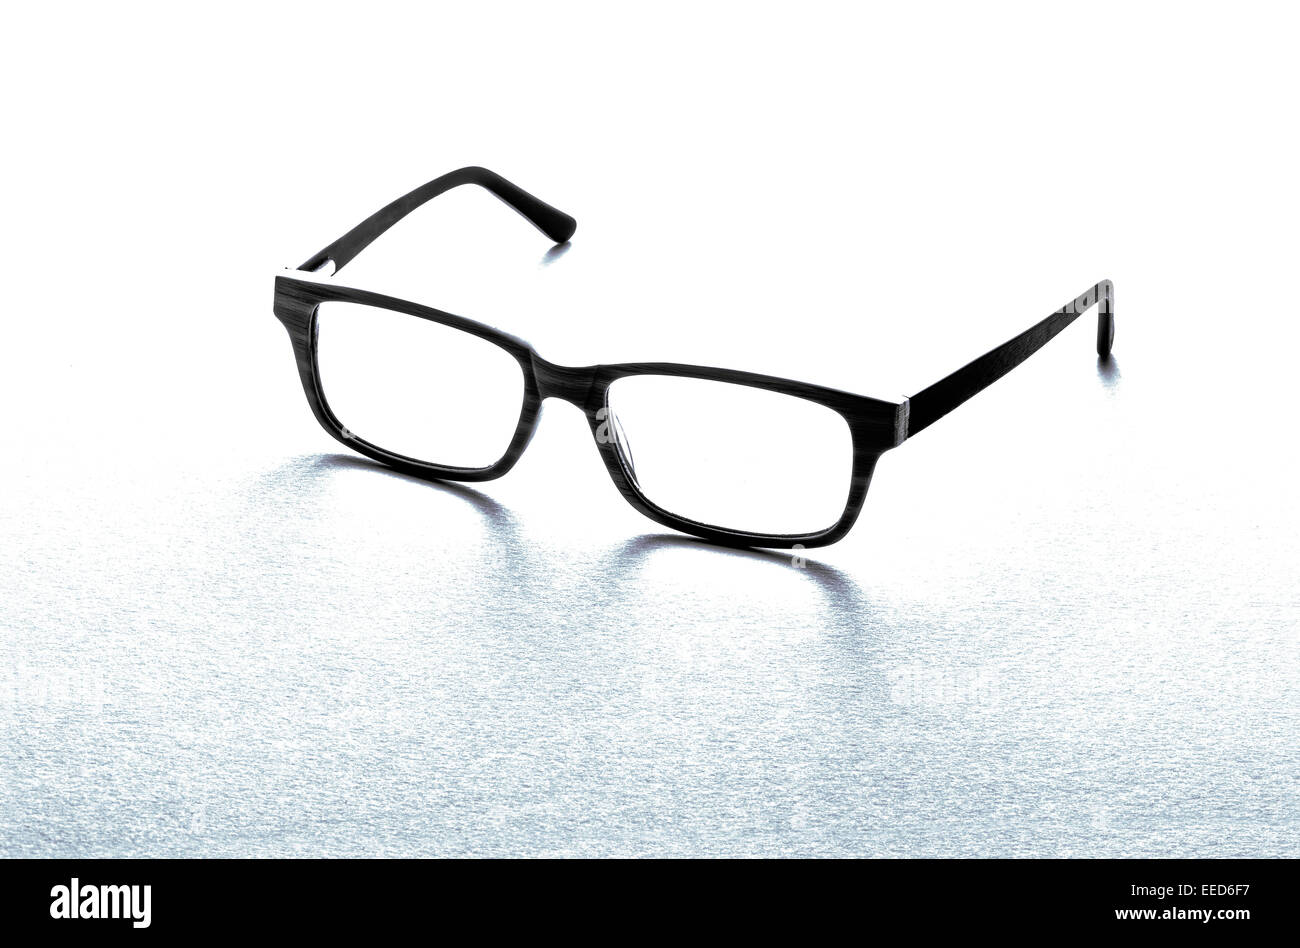 Par de gafas o anteojos, enmarcados en negro Foto de stock